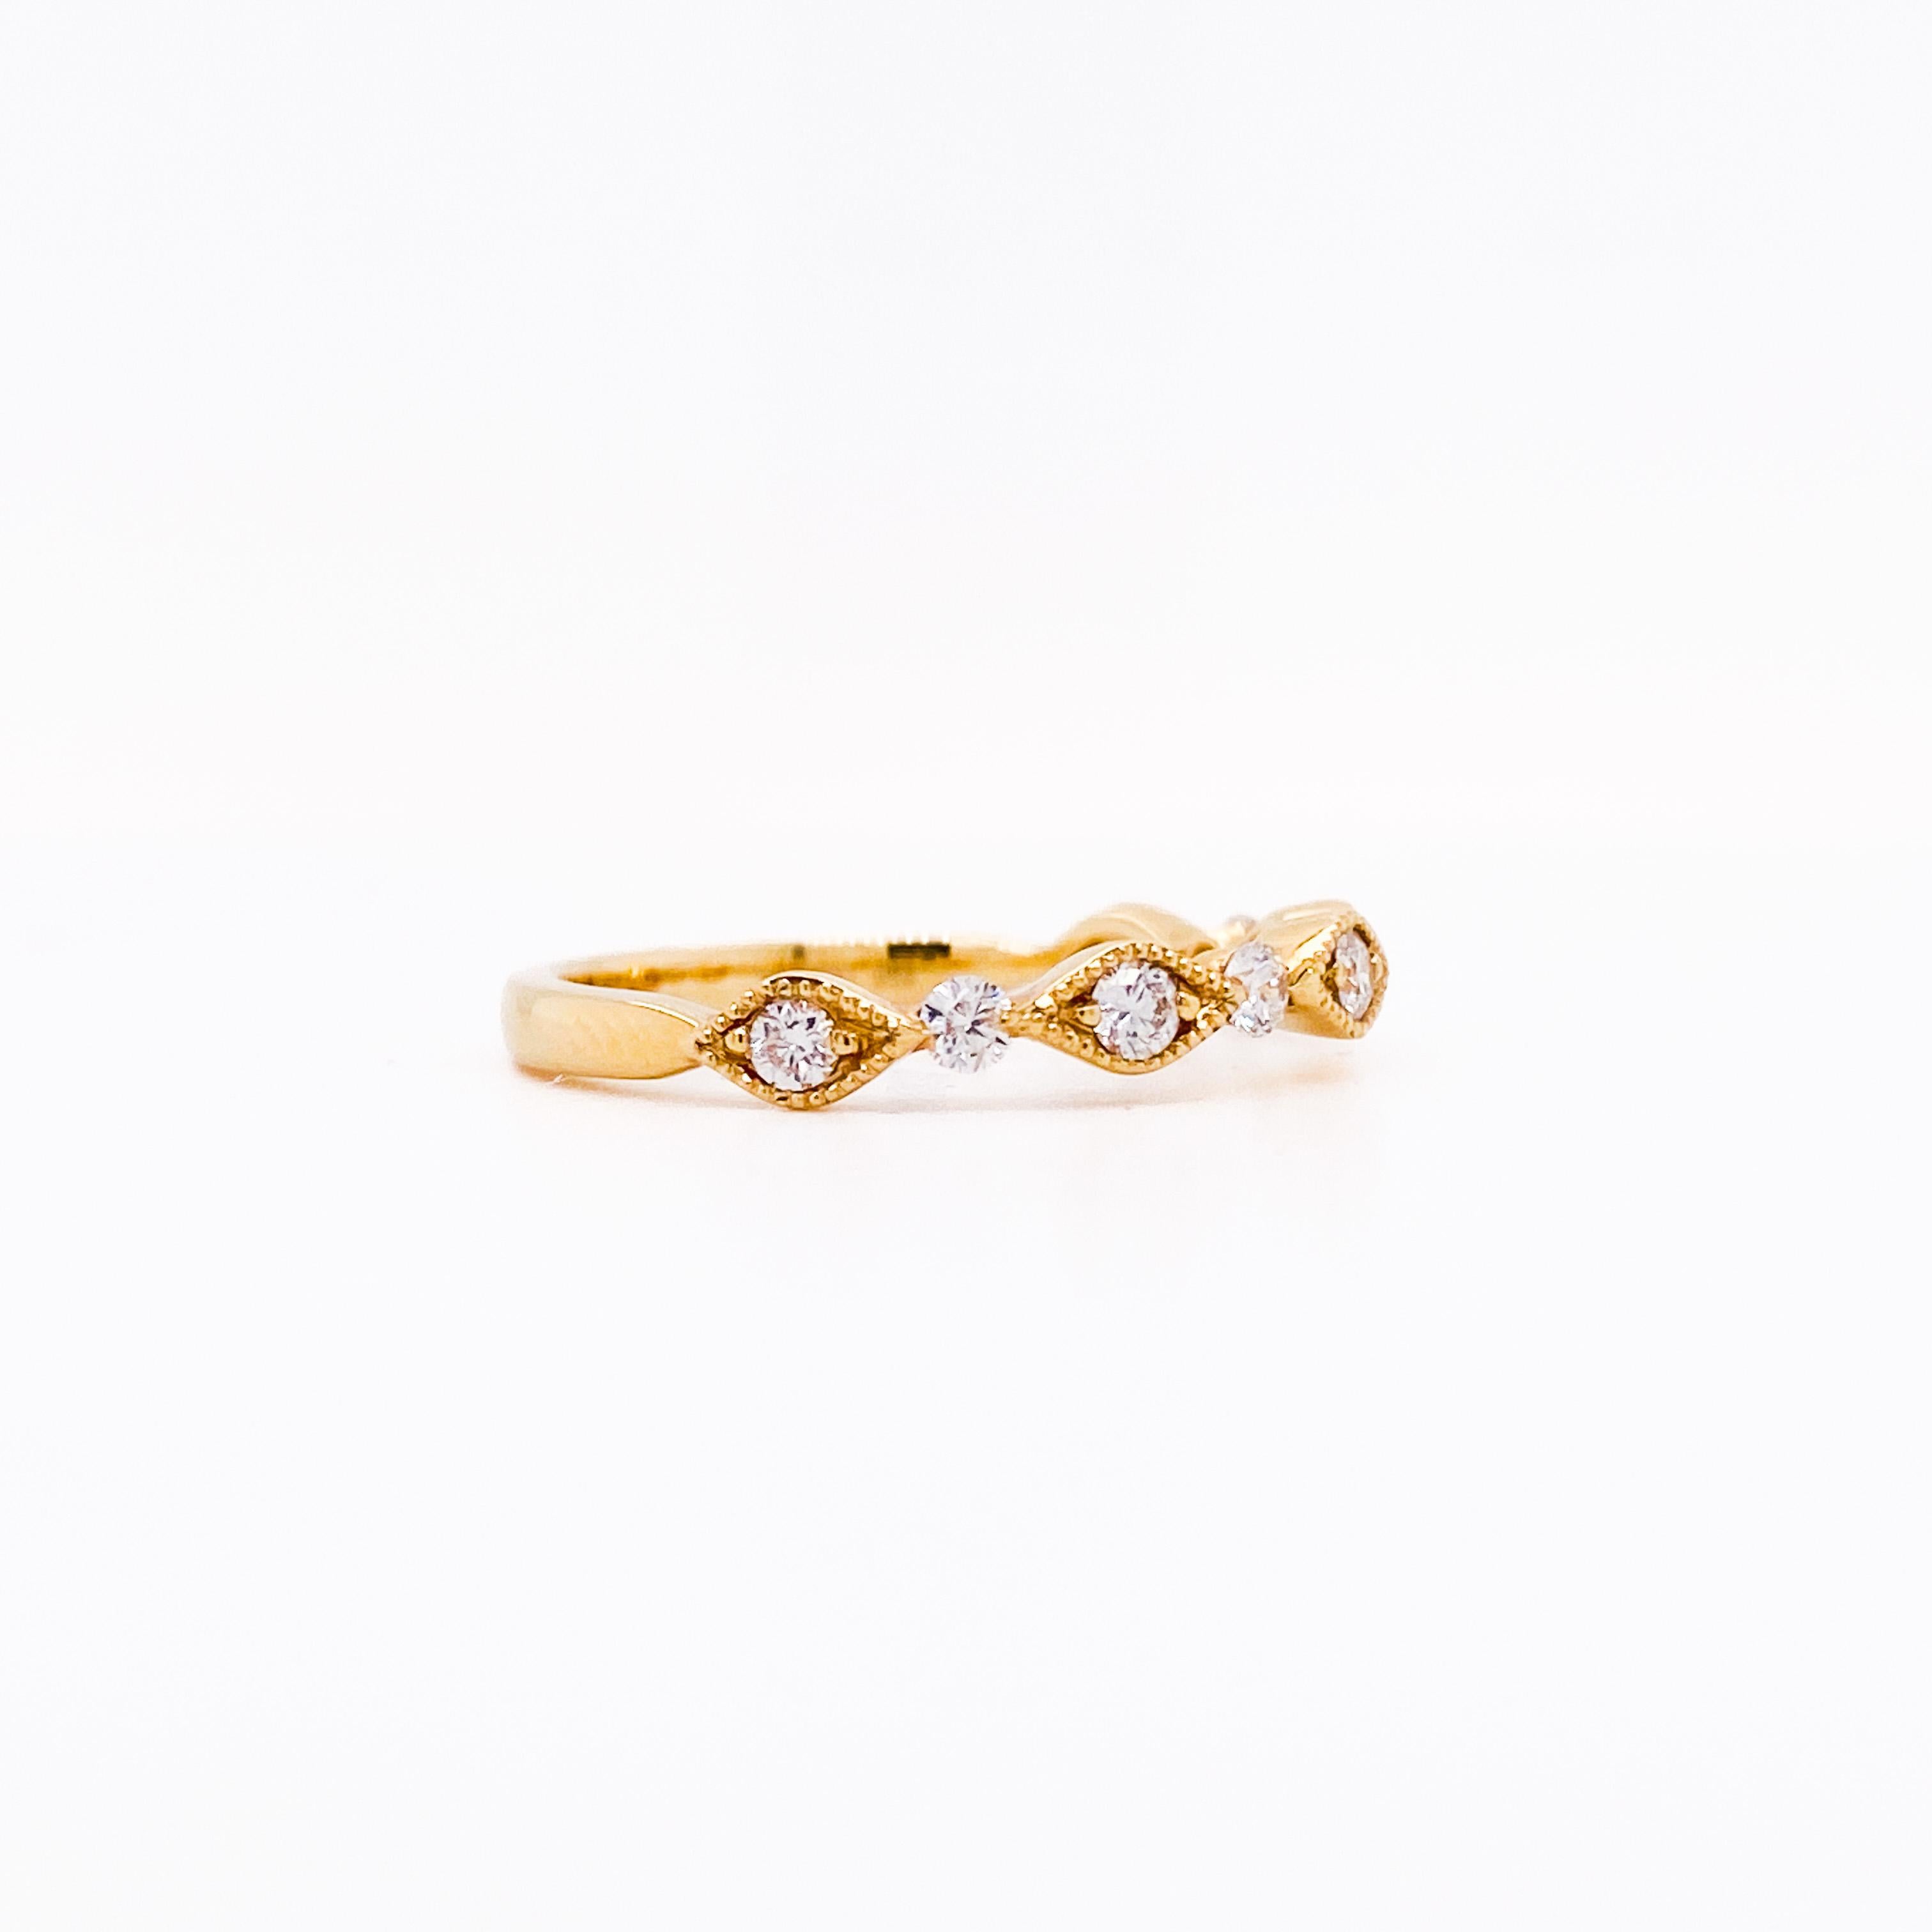 Dieses reiche, stapelbare Band aus 18 Karat Gelbgold mit Diamanten hat ein wunderschönes, abwechselndes Design. Die Diamanten scheinen zwischen marquiseförmigen Rahmen mit schönen, mit Maserung versehenen Rändern zu schweben. Jeder Diamant ist in